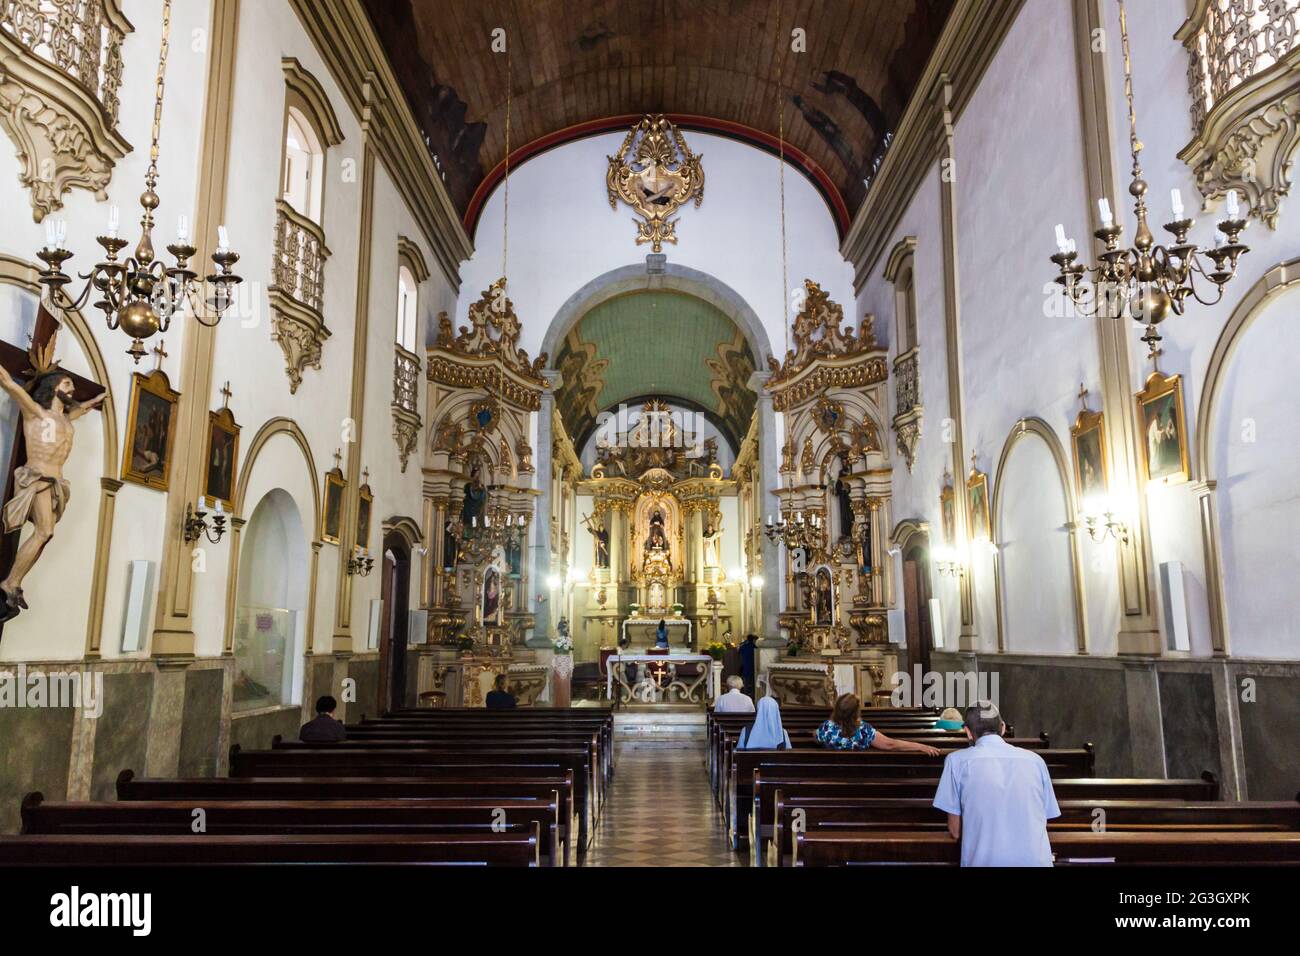 SAN PAOLO, BRASILE - 3 FEBBRAIO 2015: Interno della chiesa di San Francisco a San Paolo, Brasile Foto Stock